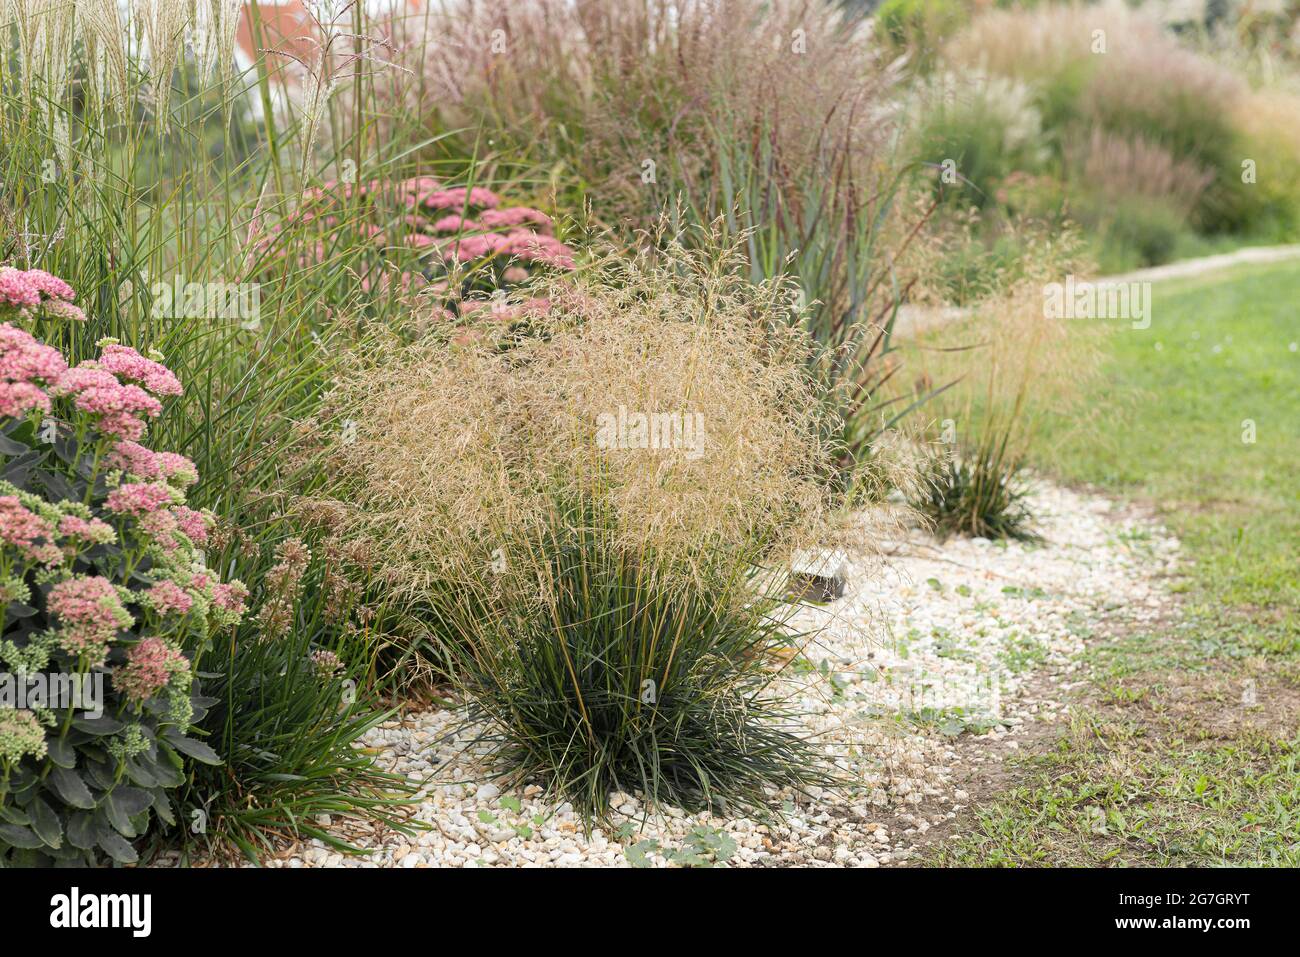 tufted hair-grass (Deschampsia cespitosa 'Palava', Deschampsia cespitosa Palava), blooming, Palava Stock Photo